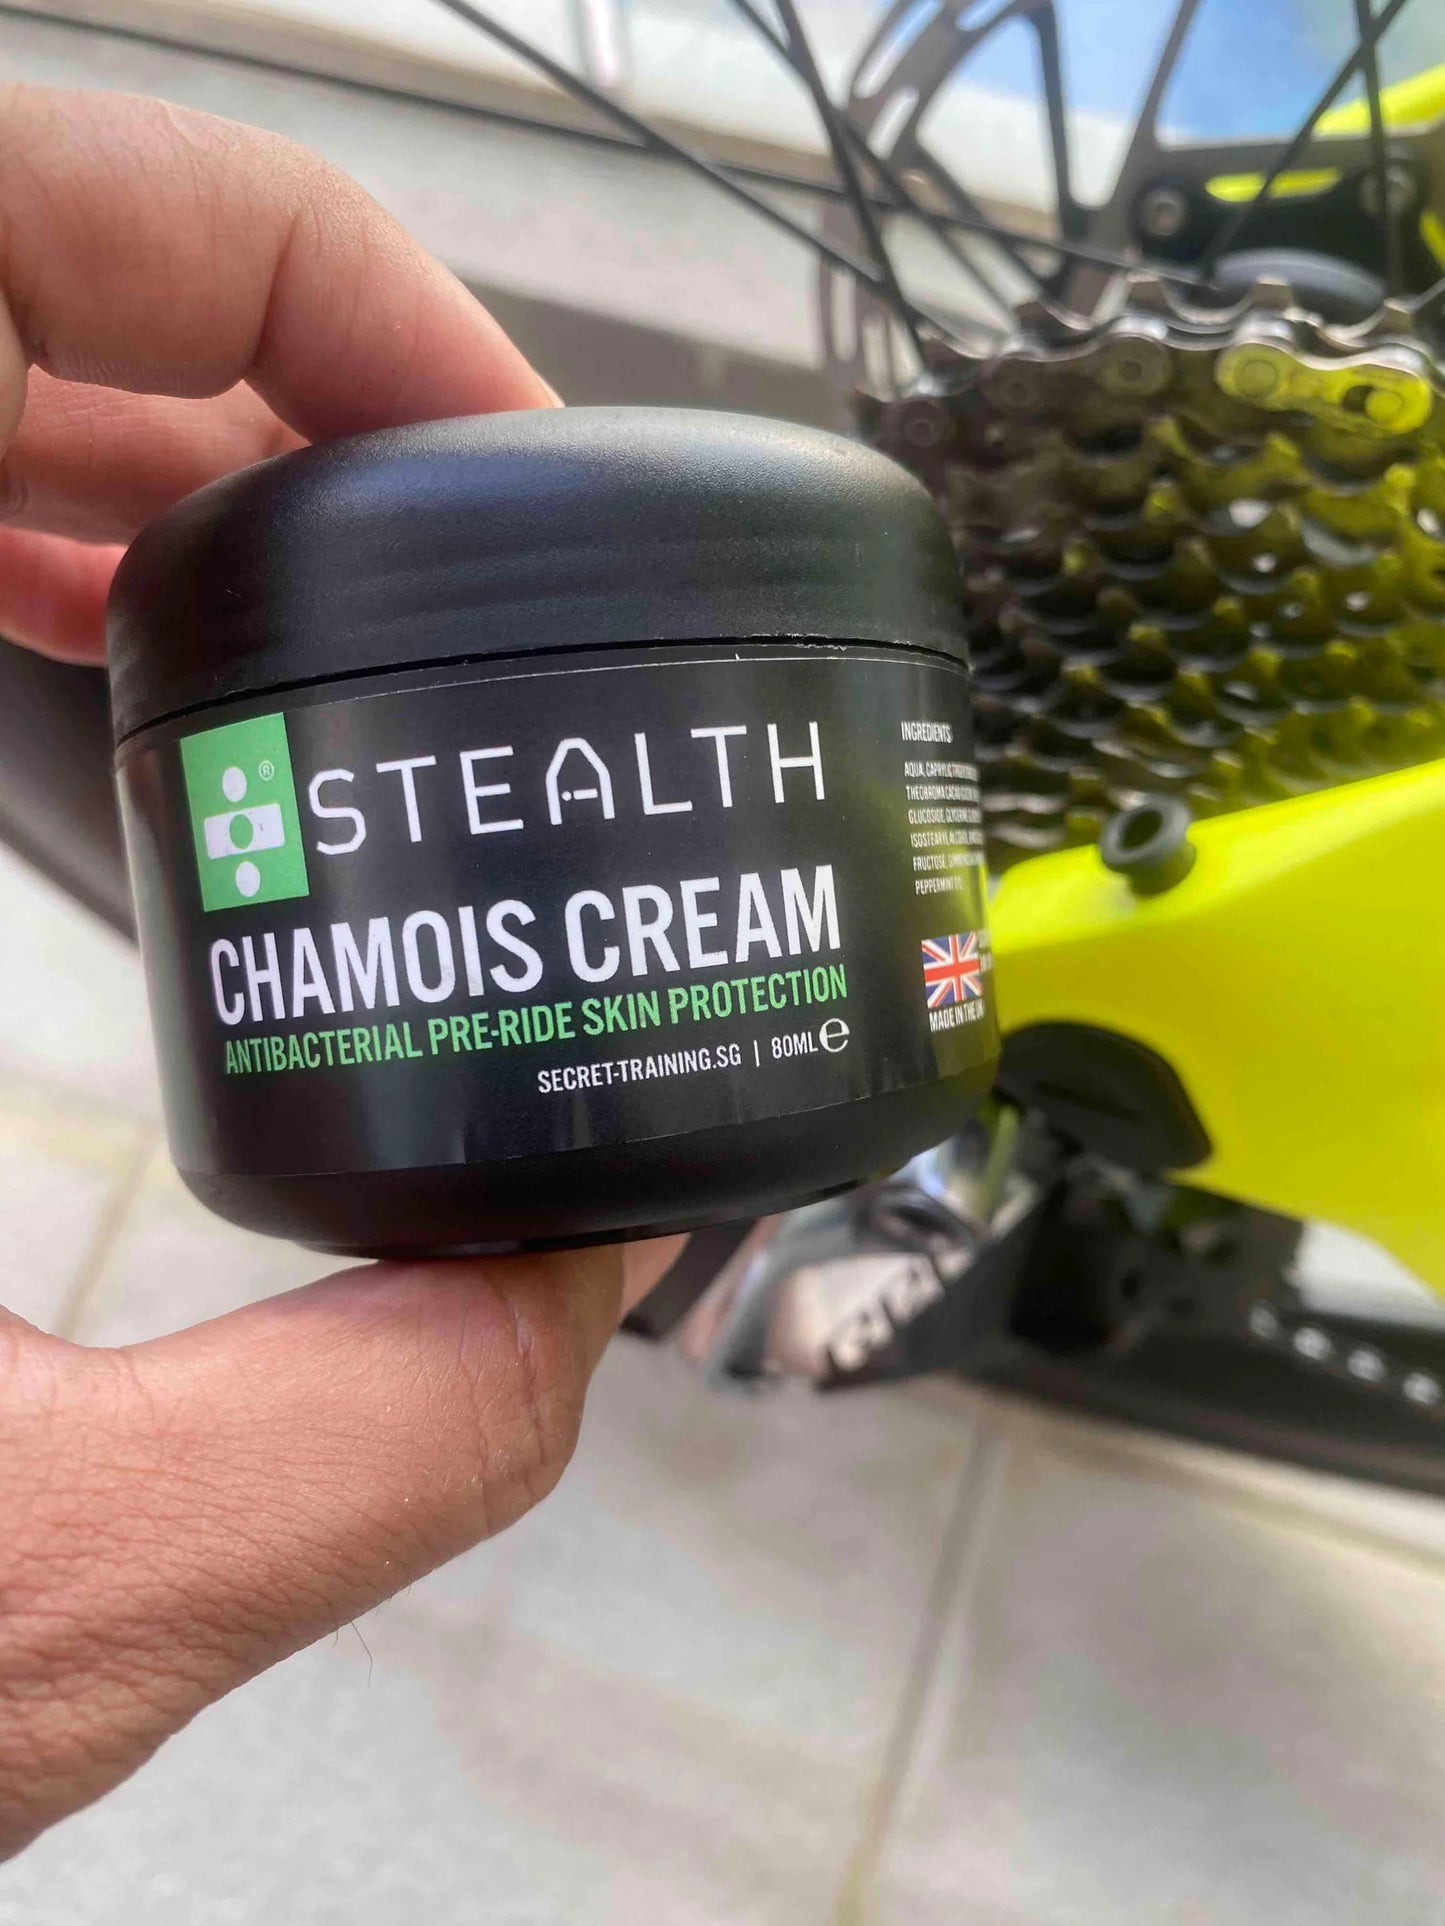 Stealth Chamois Cream